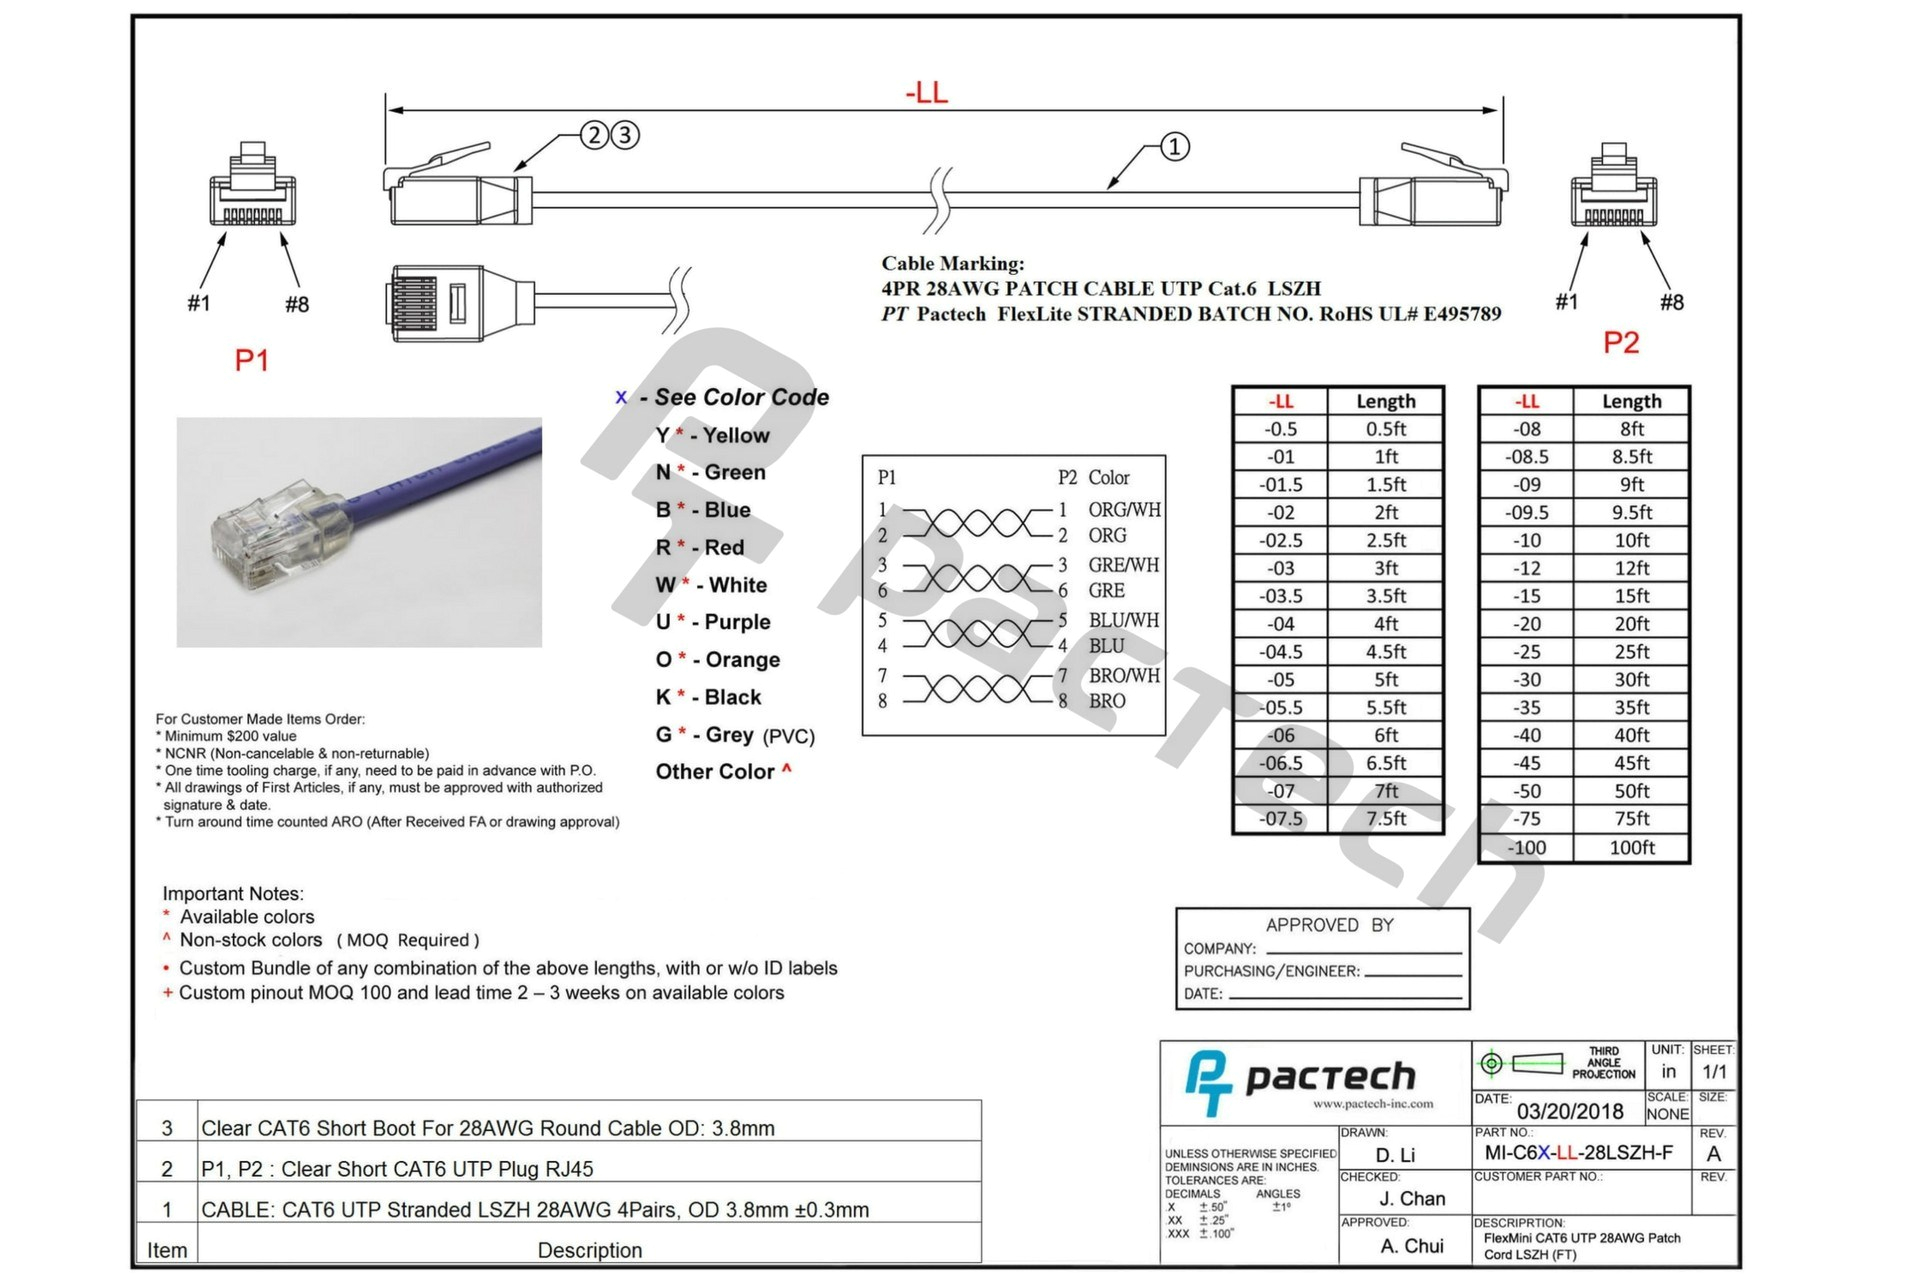 download example 4 pole headphone jack wiring diagram jpg